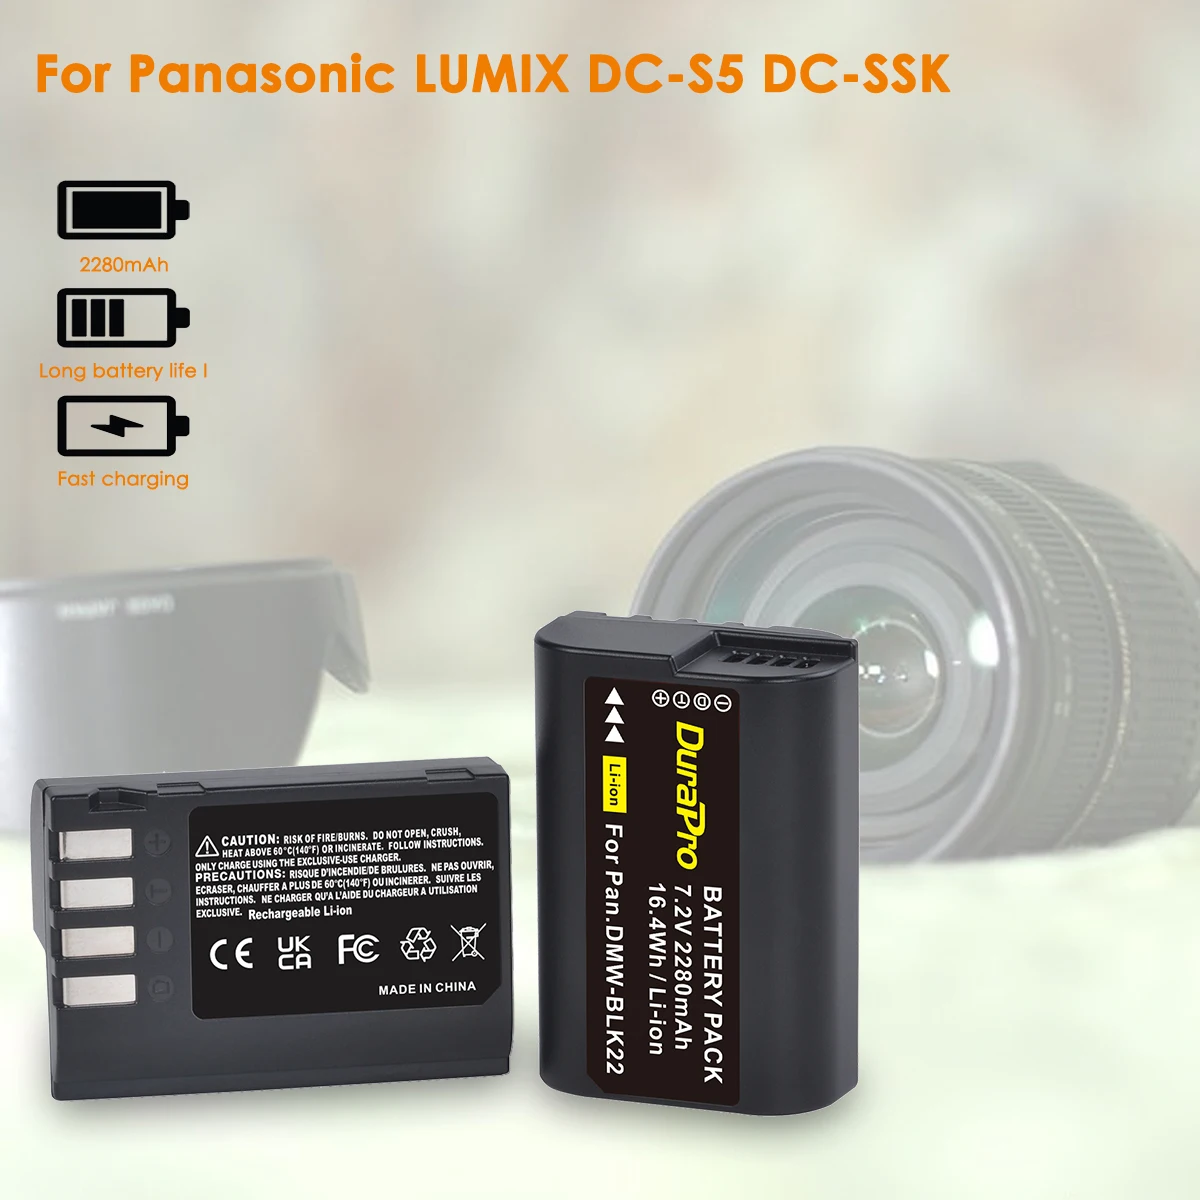 DuraPro 2280mAh DMW-BLK22 Аккумулятор + Светодиодное Двойное Зарядное Устройство для Panasonic LUMIX DC-S5 DC-S5K Аксессуары для Камеры Изображение 1